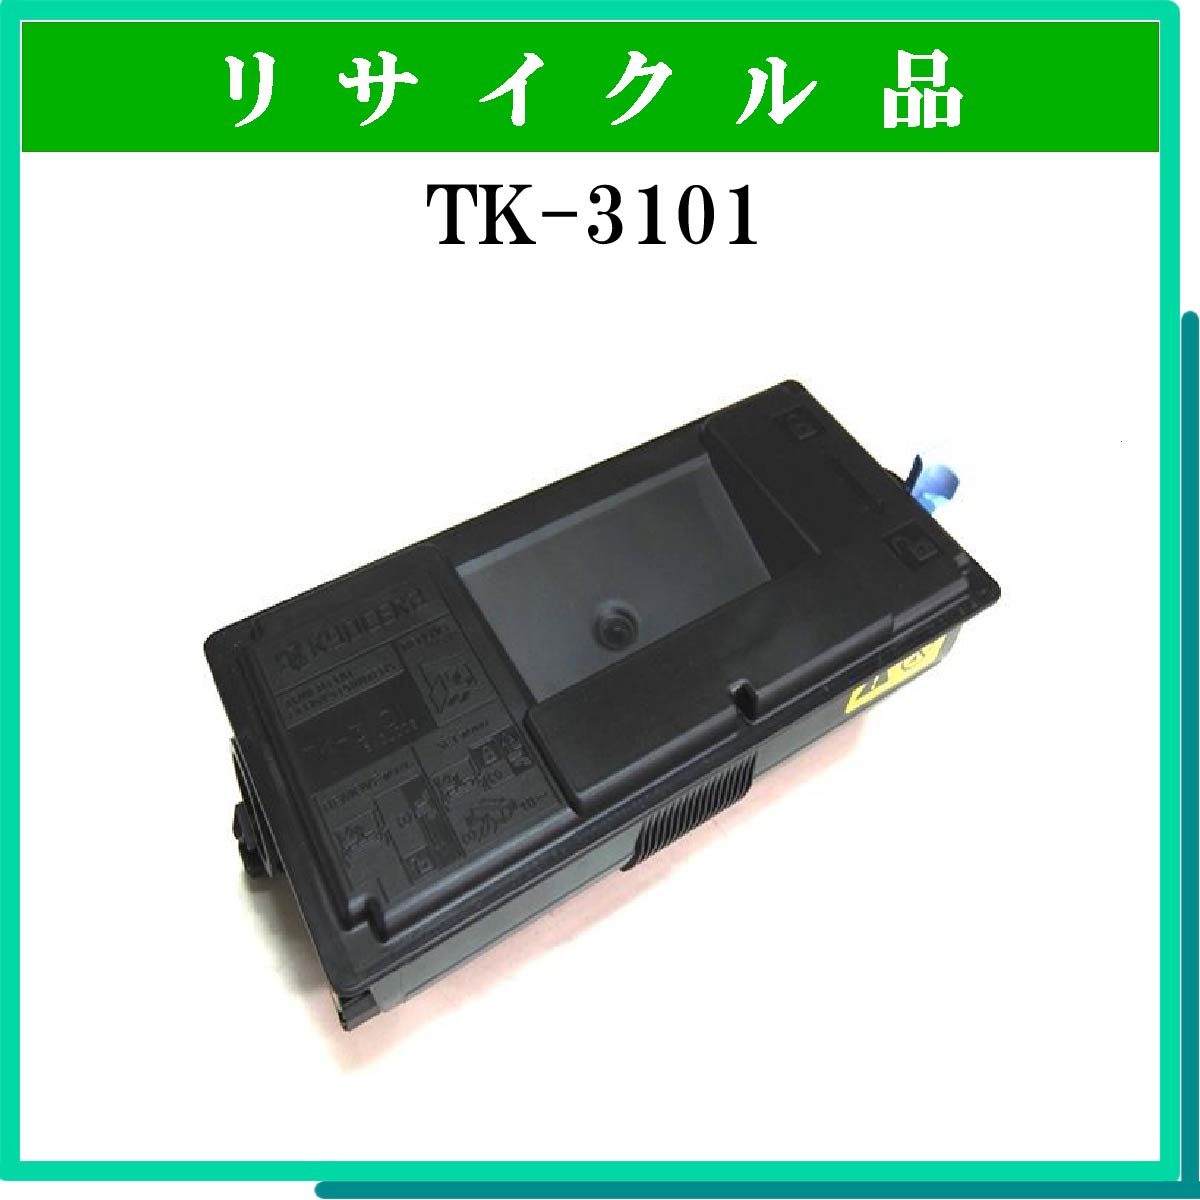 TK-3101